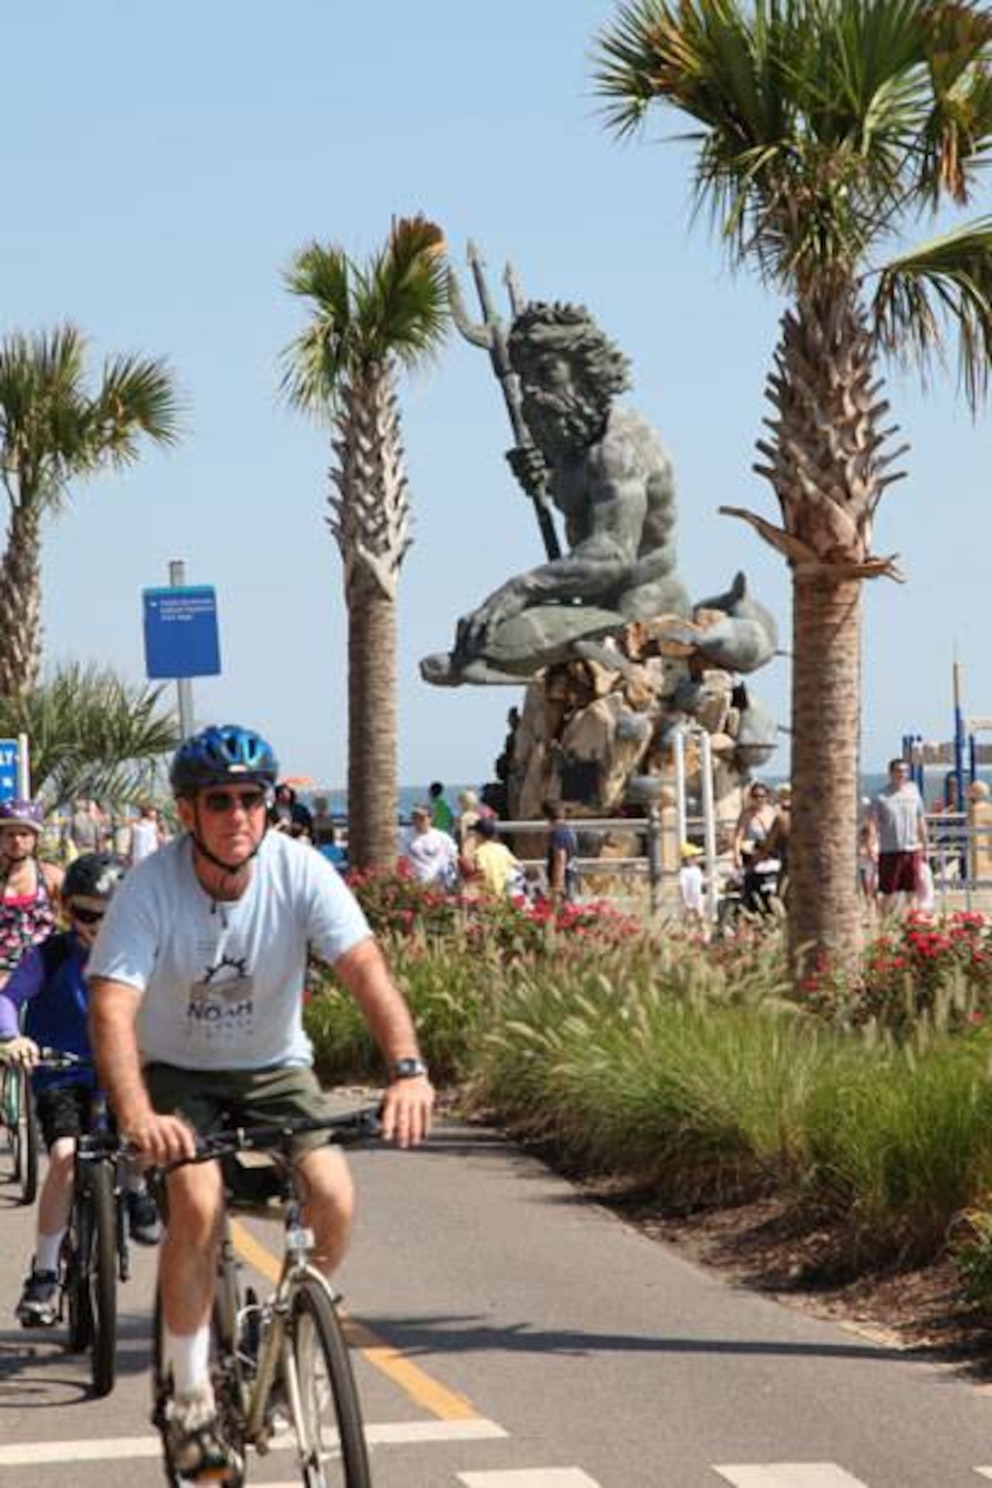 Wer Lust auf Bewegung hat, kann an der Promenade Rad fahren. Im Hintergrund: die Statue „King Neptune“